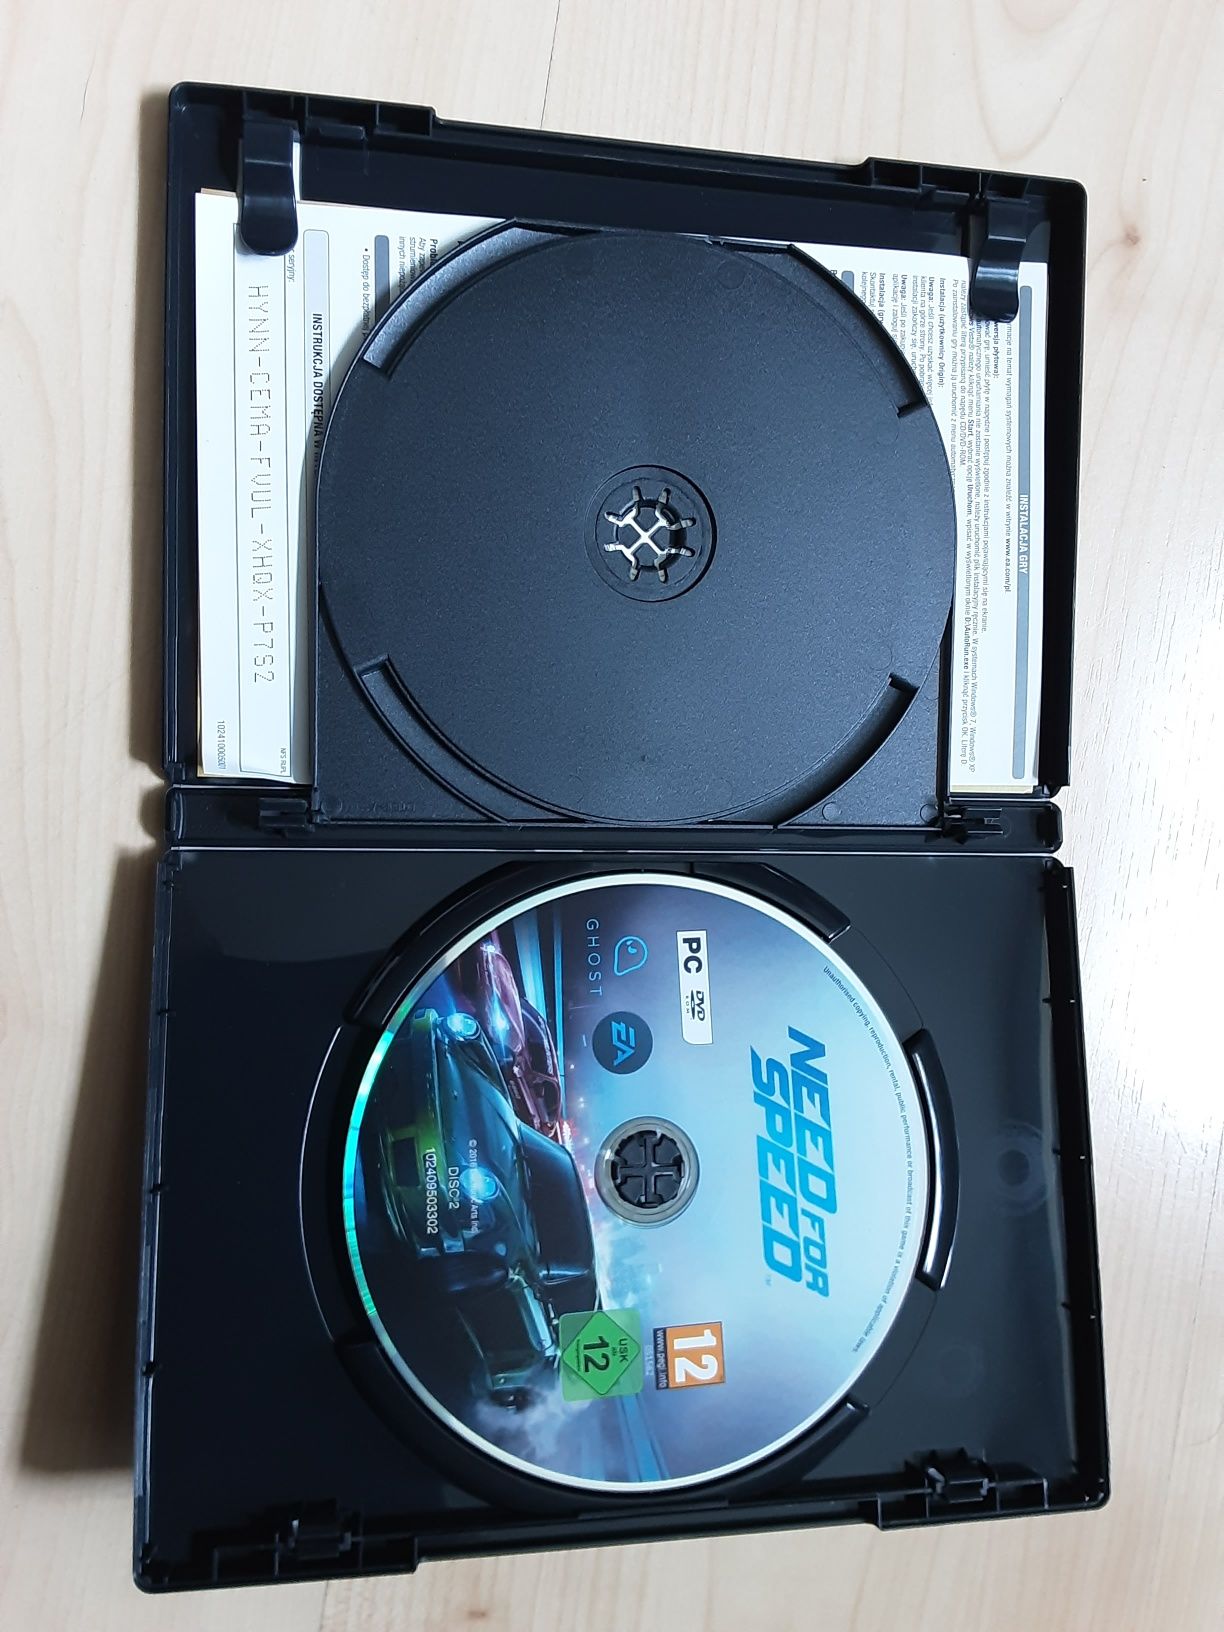 Gra PC Need For Speed NFS dwie płyty